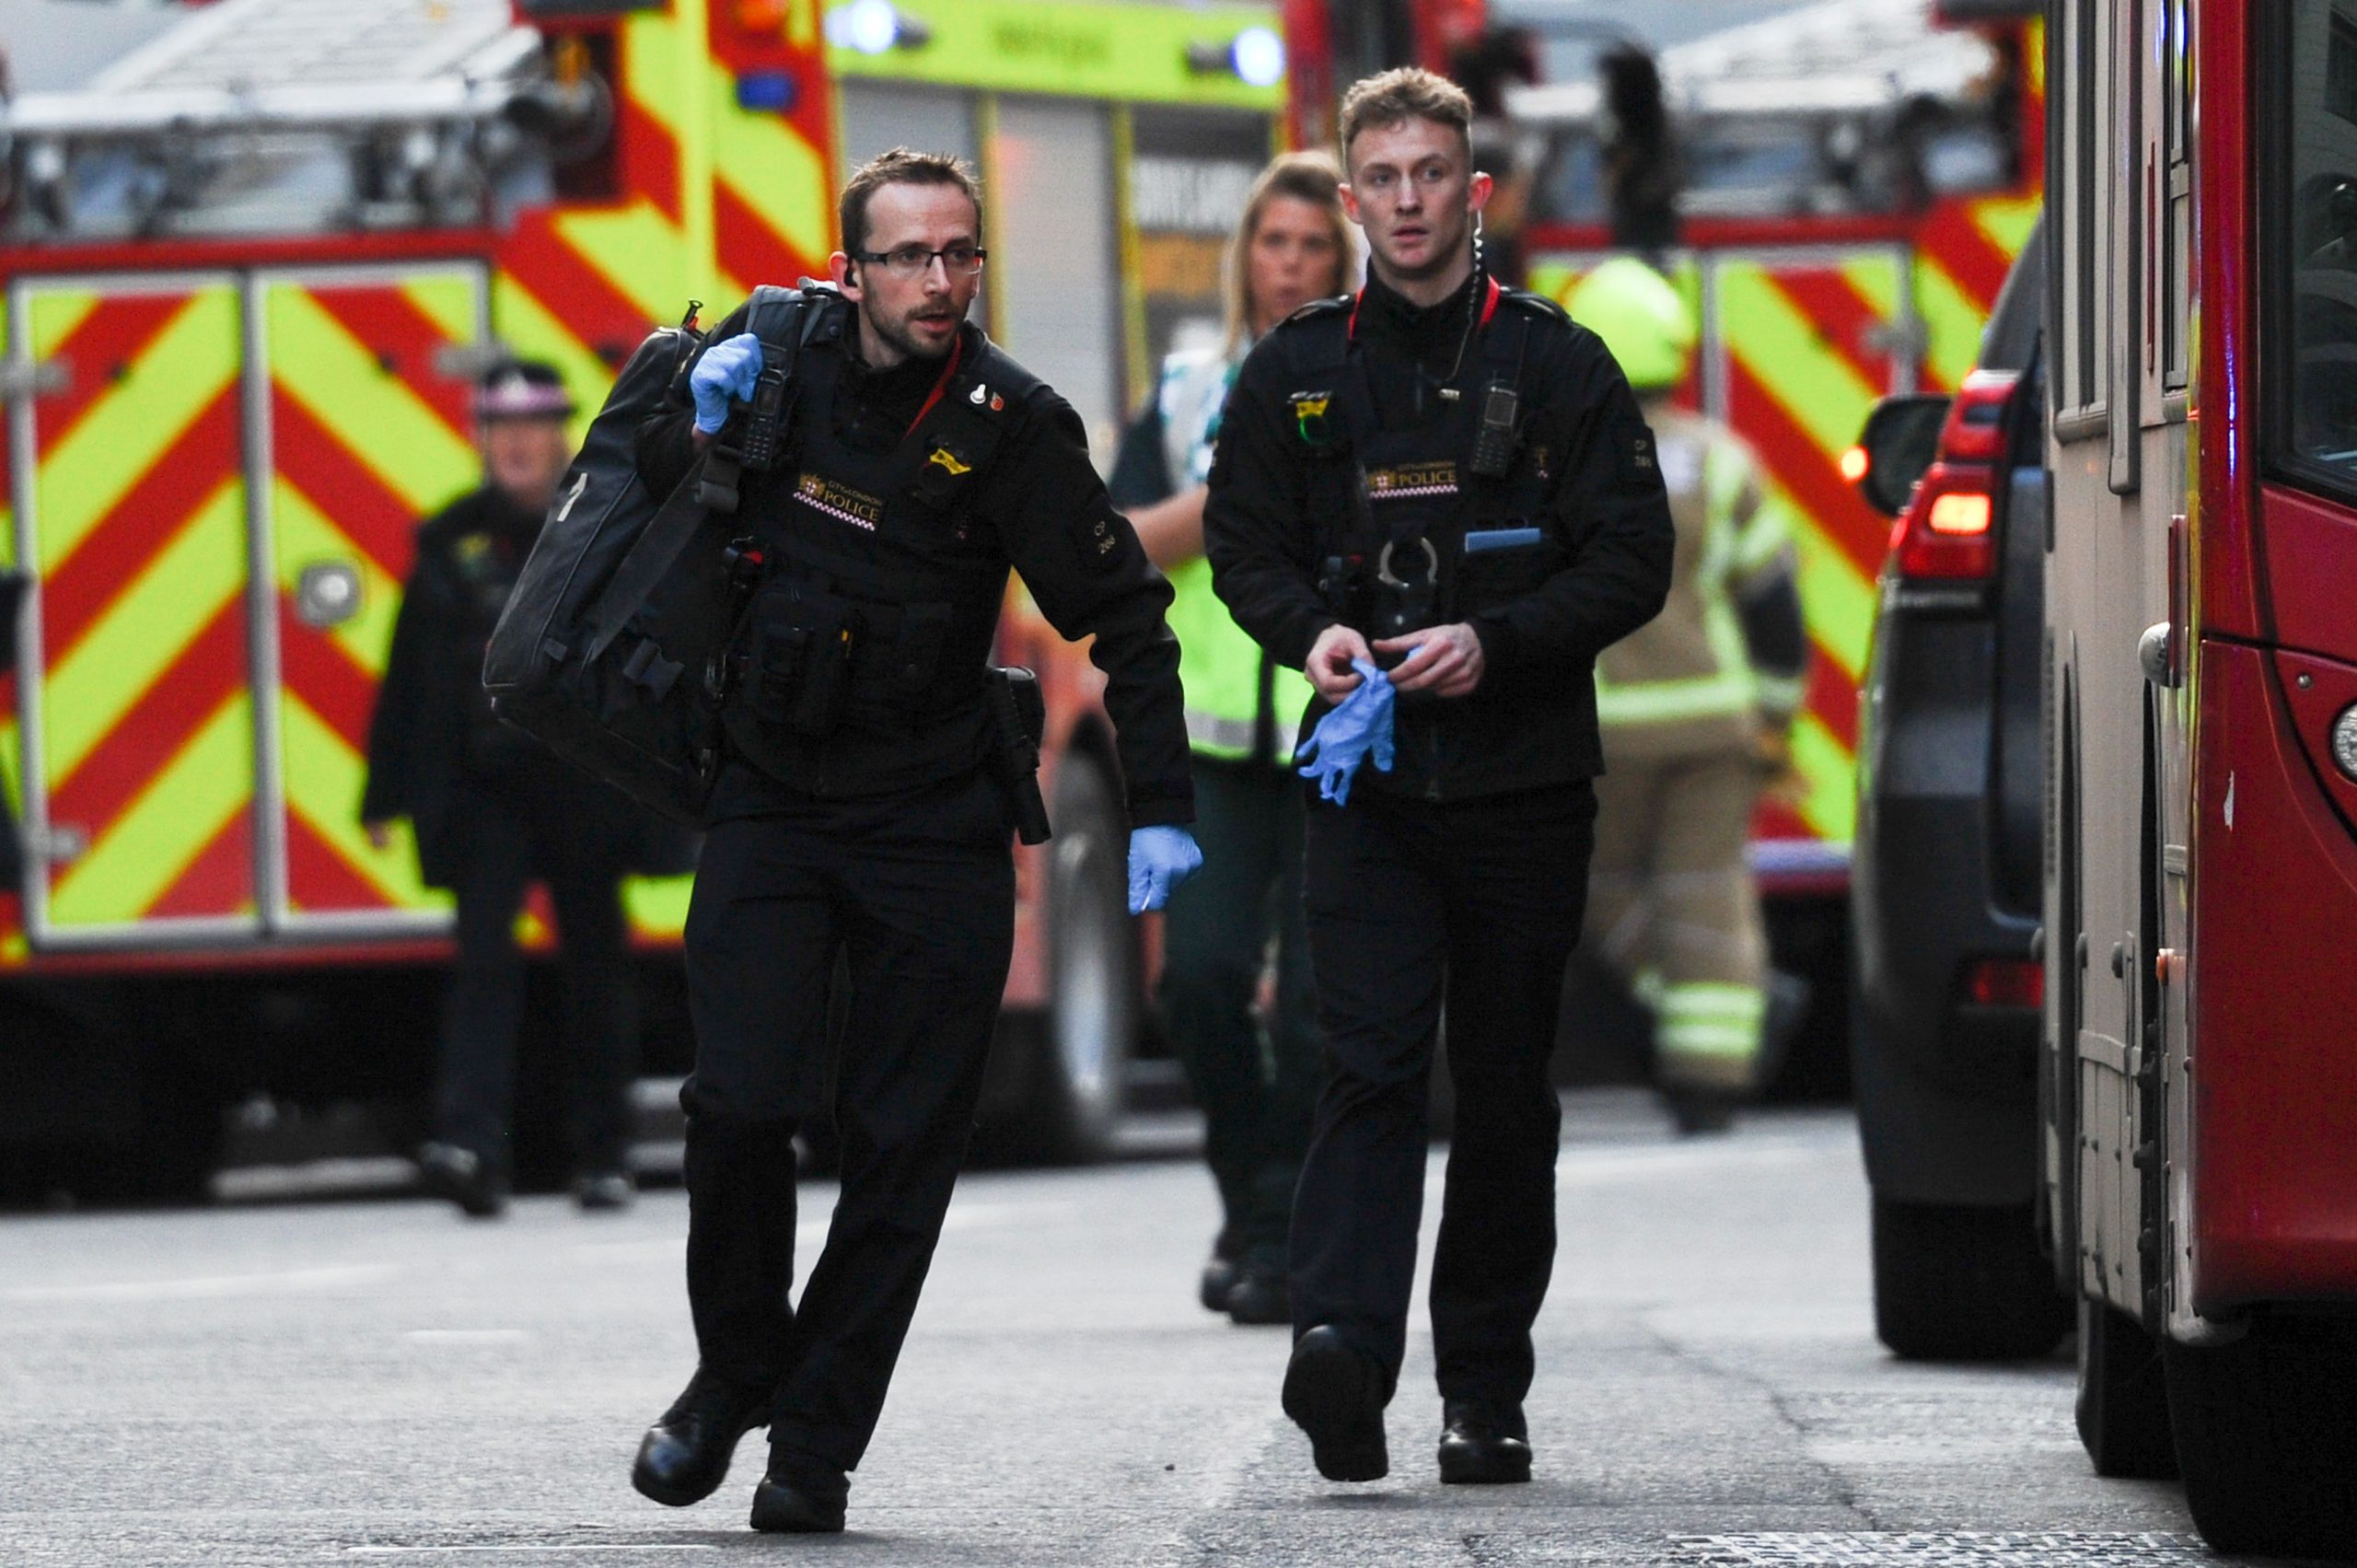 Morreram duas das vítimas do ataque na Ponte de Londres